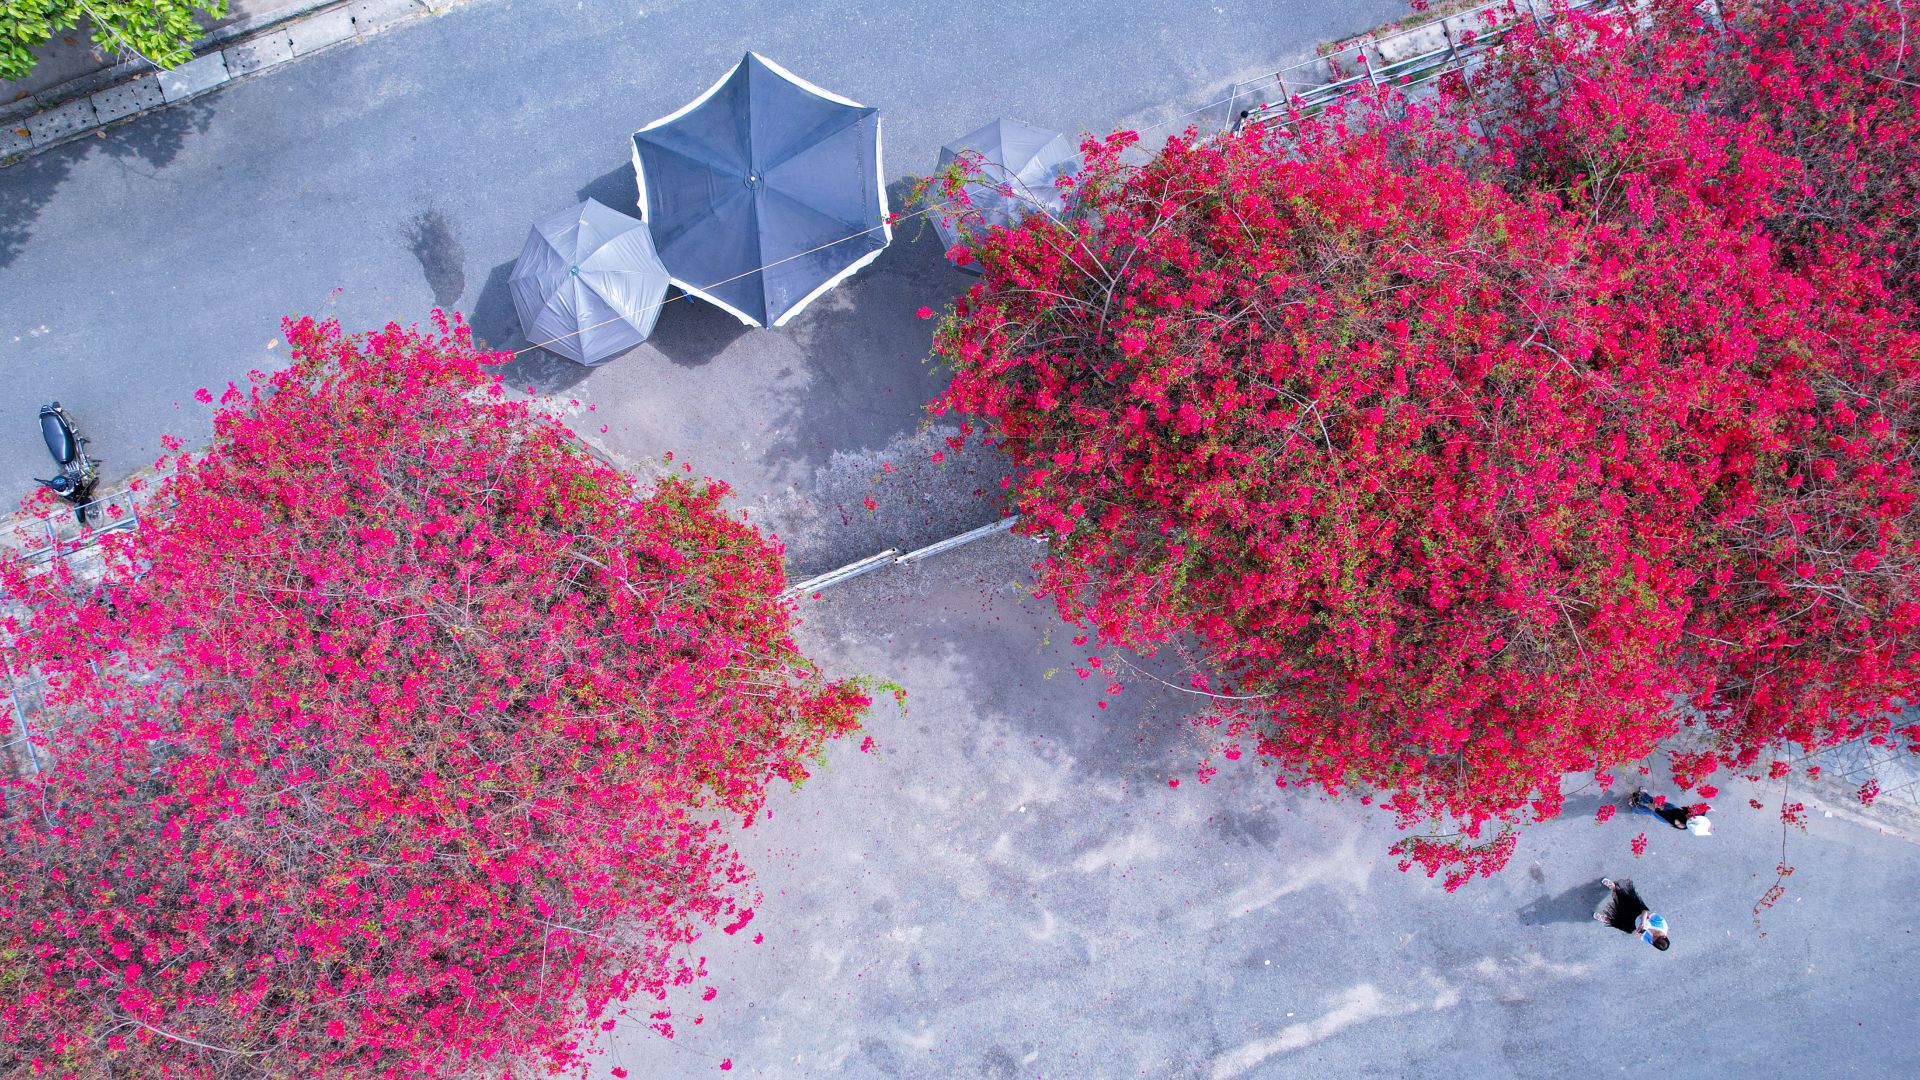 Một giàn hoa giấy tuôn bông đỏ không kịp cản đang xôn xao ở Tây Ninh, nhiều người đến chụp ảnh, ngắm say mê - Ảnh 4.